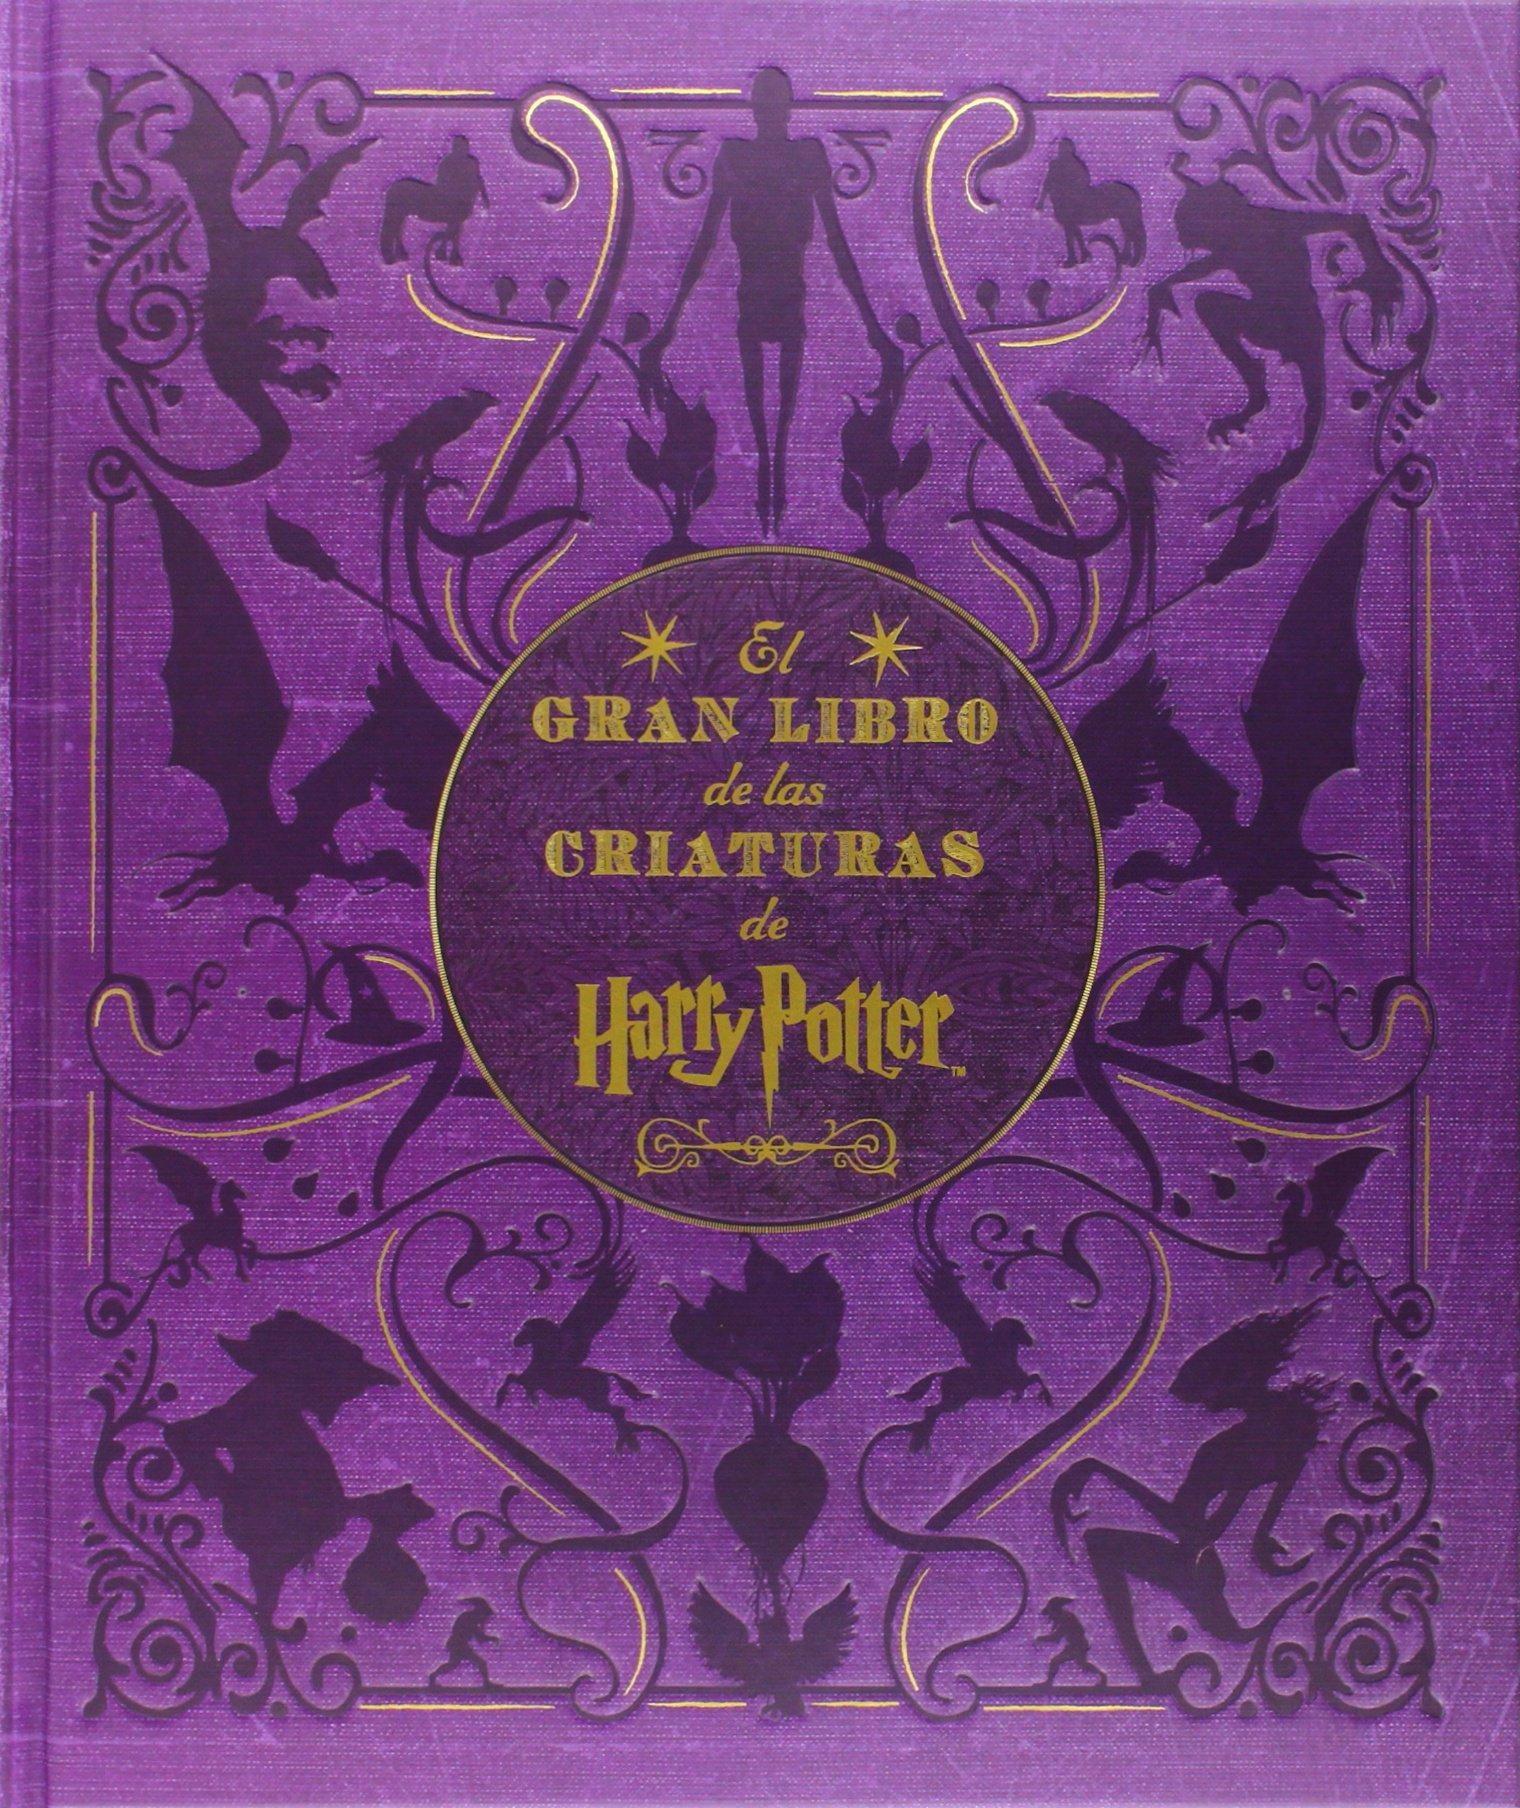 El Gran Libro de las Criaturas de Harry Potter "Las Criaturas y Plantas de las Películas de Harry Potter"